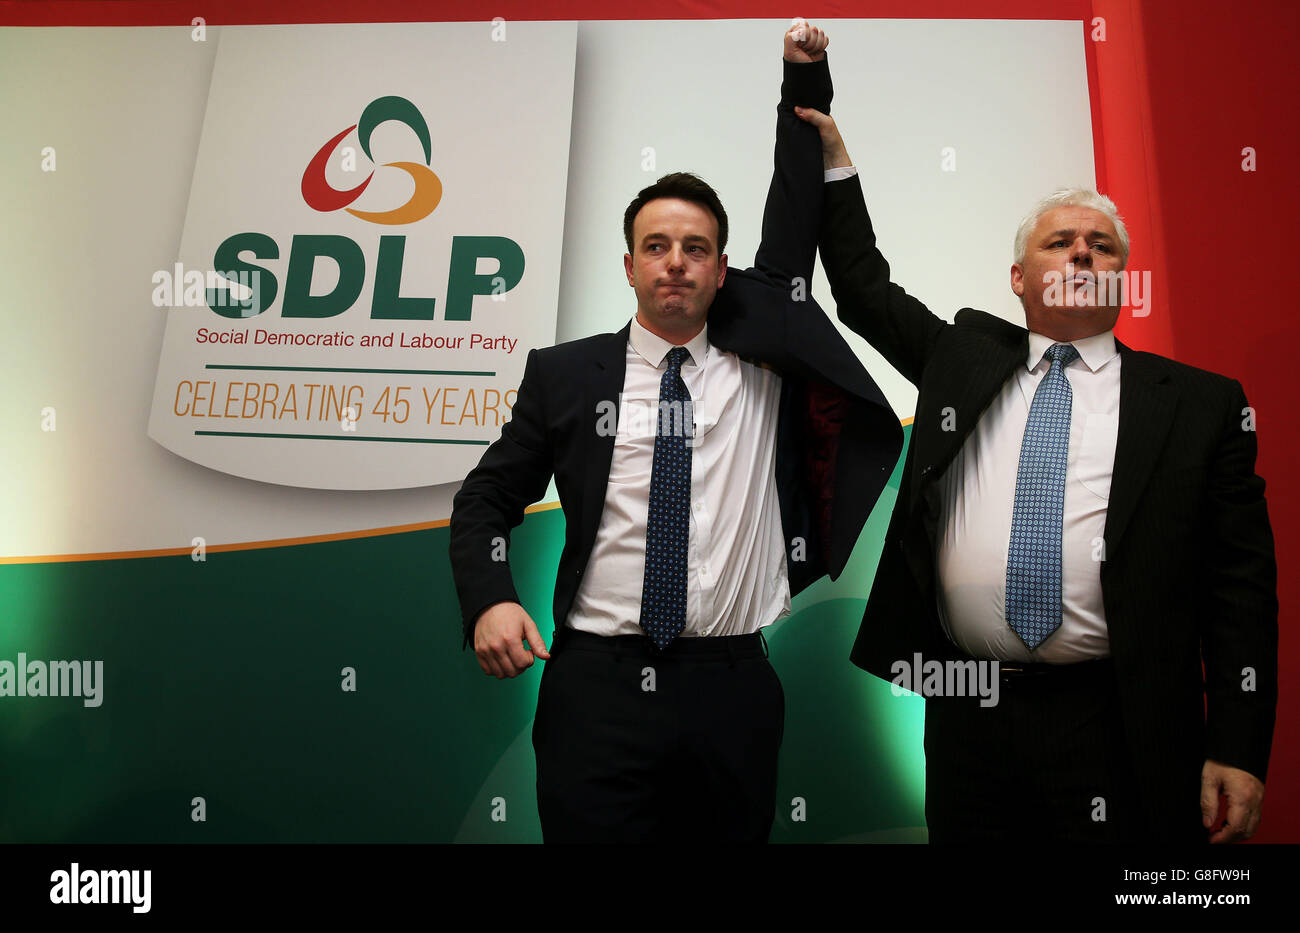 Colum Eastwood, membro dell'Assemblea di Foyle (sinistra), eletto come nuovo leader del Partito socialdemocratico e laburista (SDLP), con il neoeletto vice leader Fearghal McKinney (destra), presso l'Armagh City Hotel, Armagh. Foto Stock